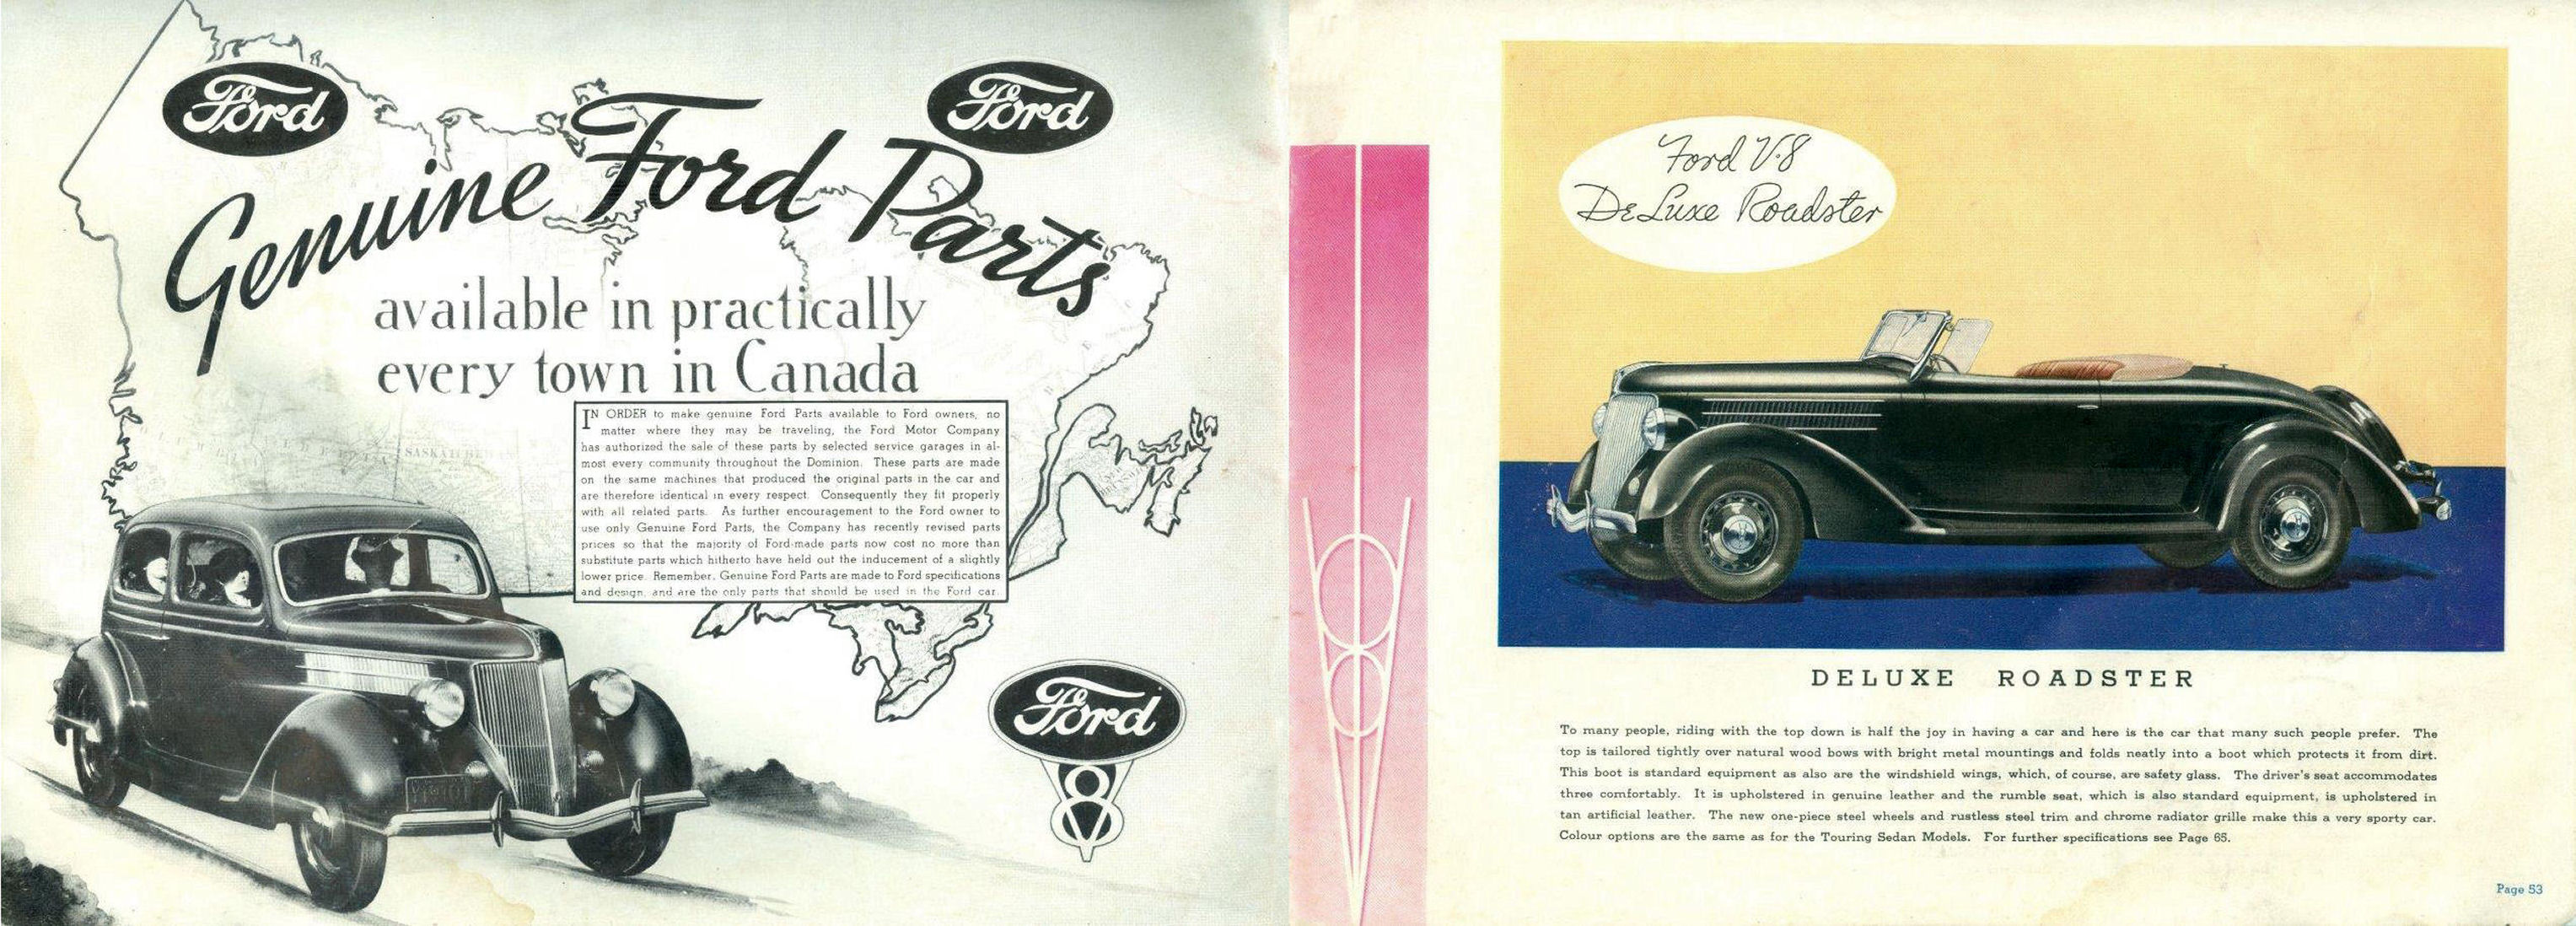 1936_Ford_Dealer_Album_Aus-52-53